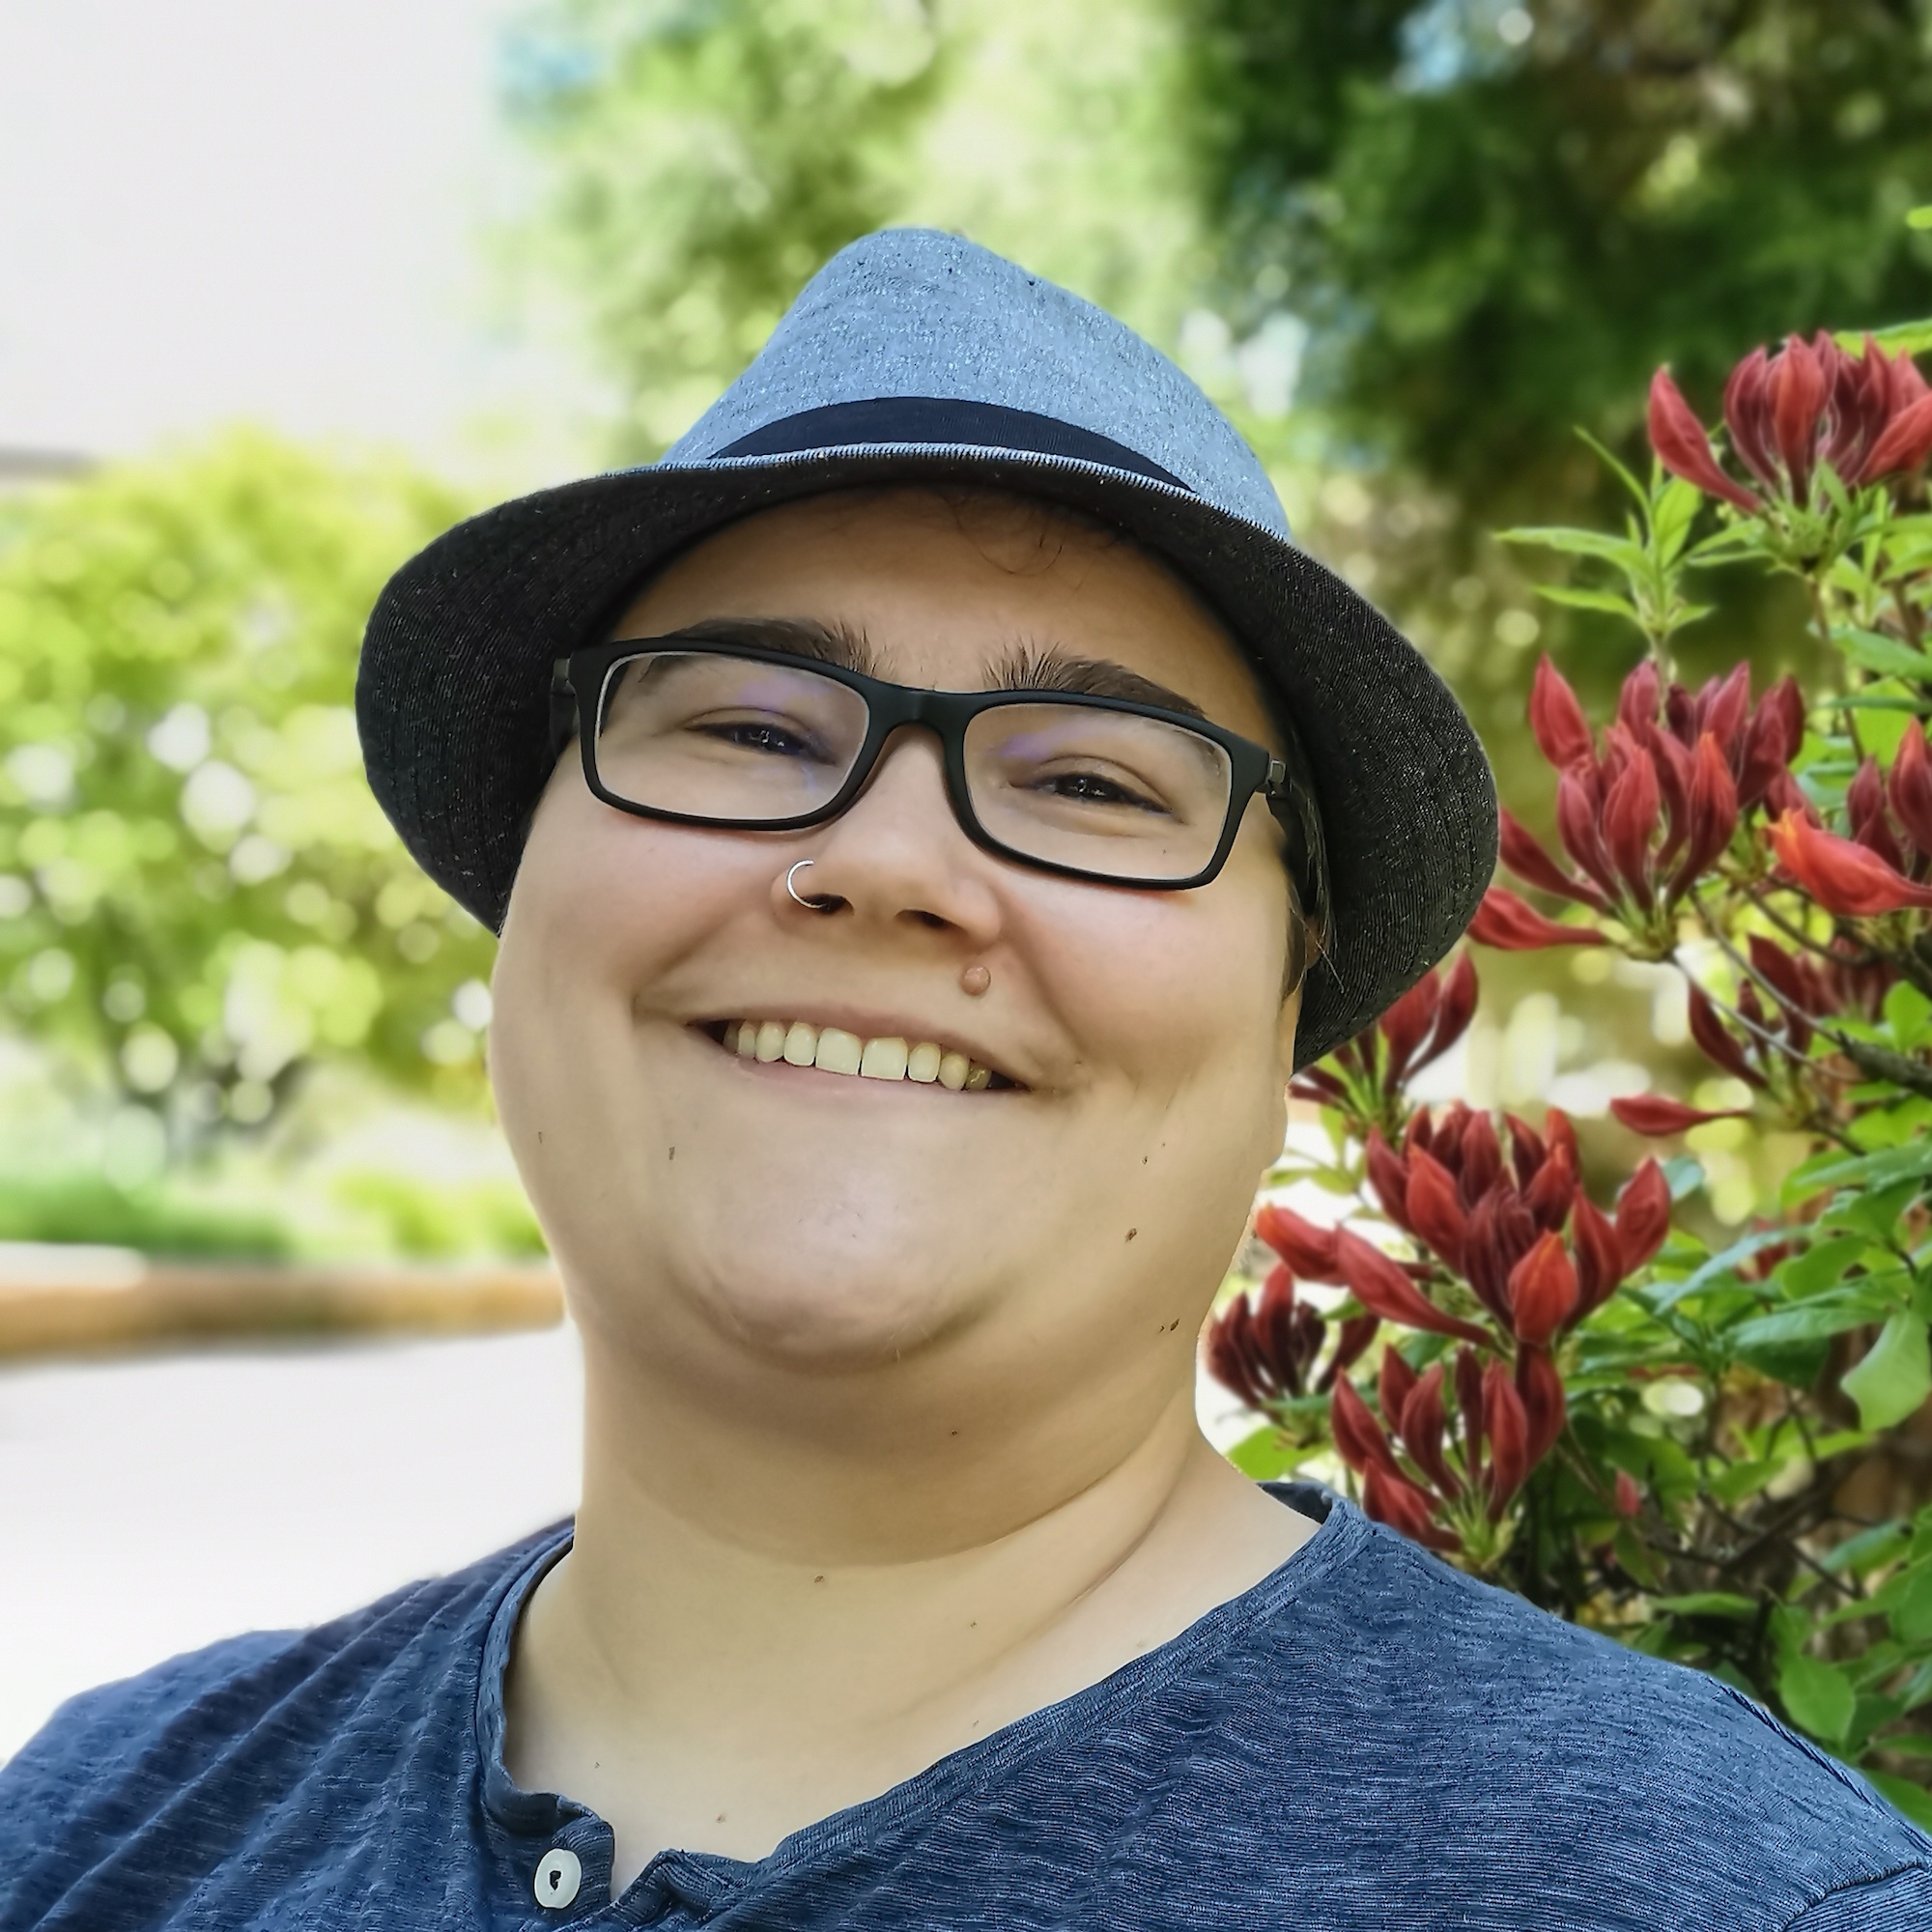 Raphaela Soden ist non-binär und engagiert sich unter anderem im Vorstand von #OutinChuch dafür, dass trans Menschen sichtbarer werden. (c) privat